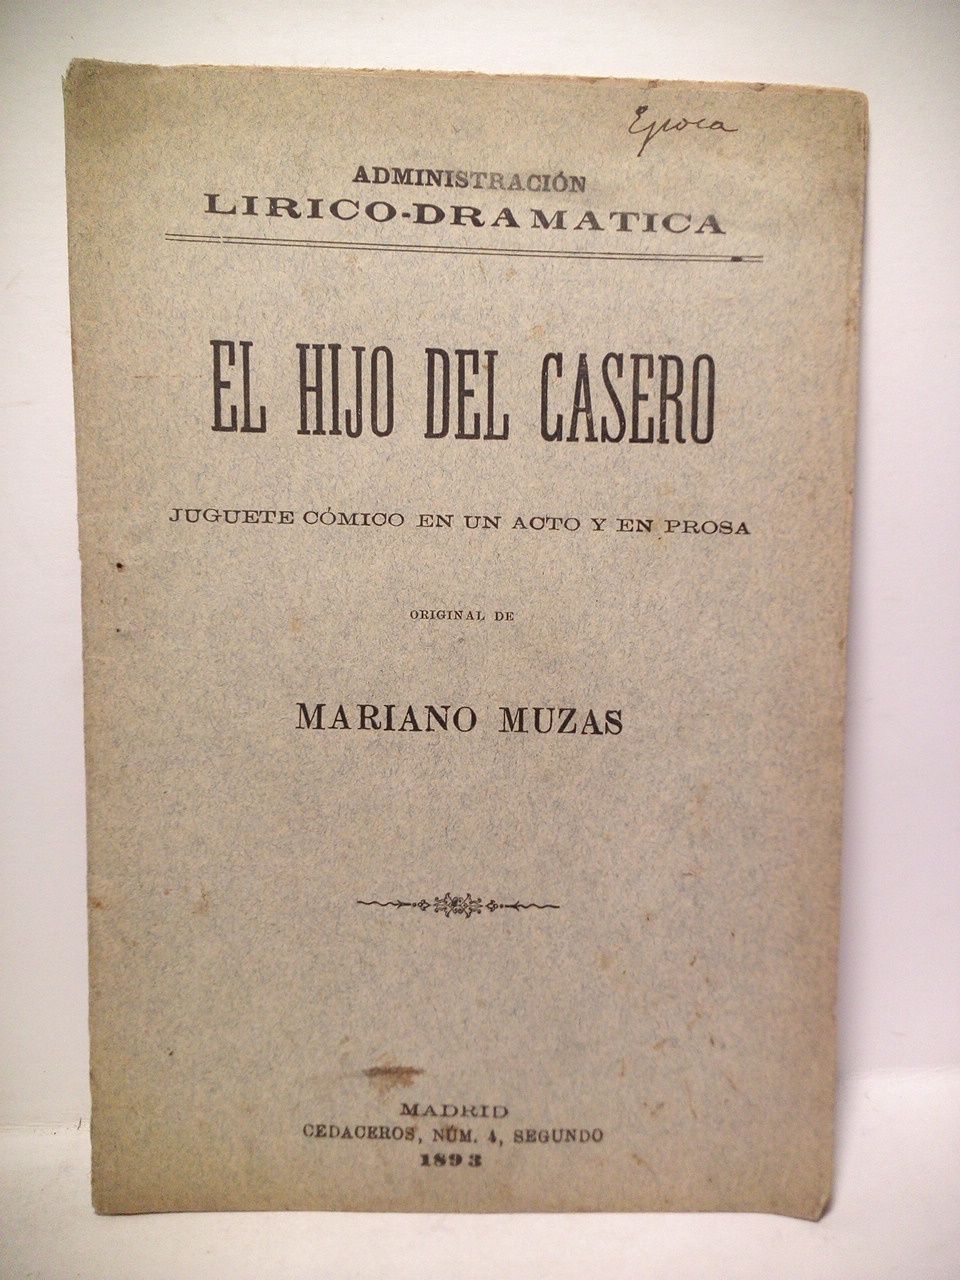 MUZAS, Mariano - El hijo del casero. (Juguete cmico en un acto y en prosa. Estrenado en el Teatro Lara el 31 de Enero de 1893)